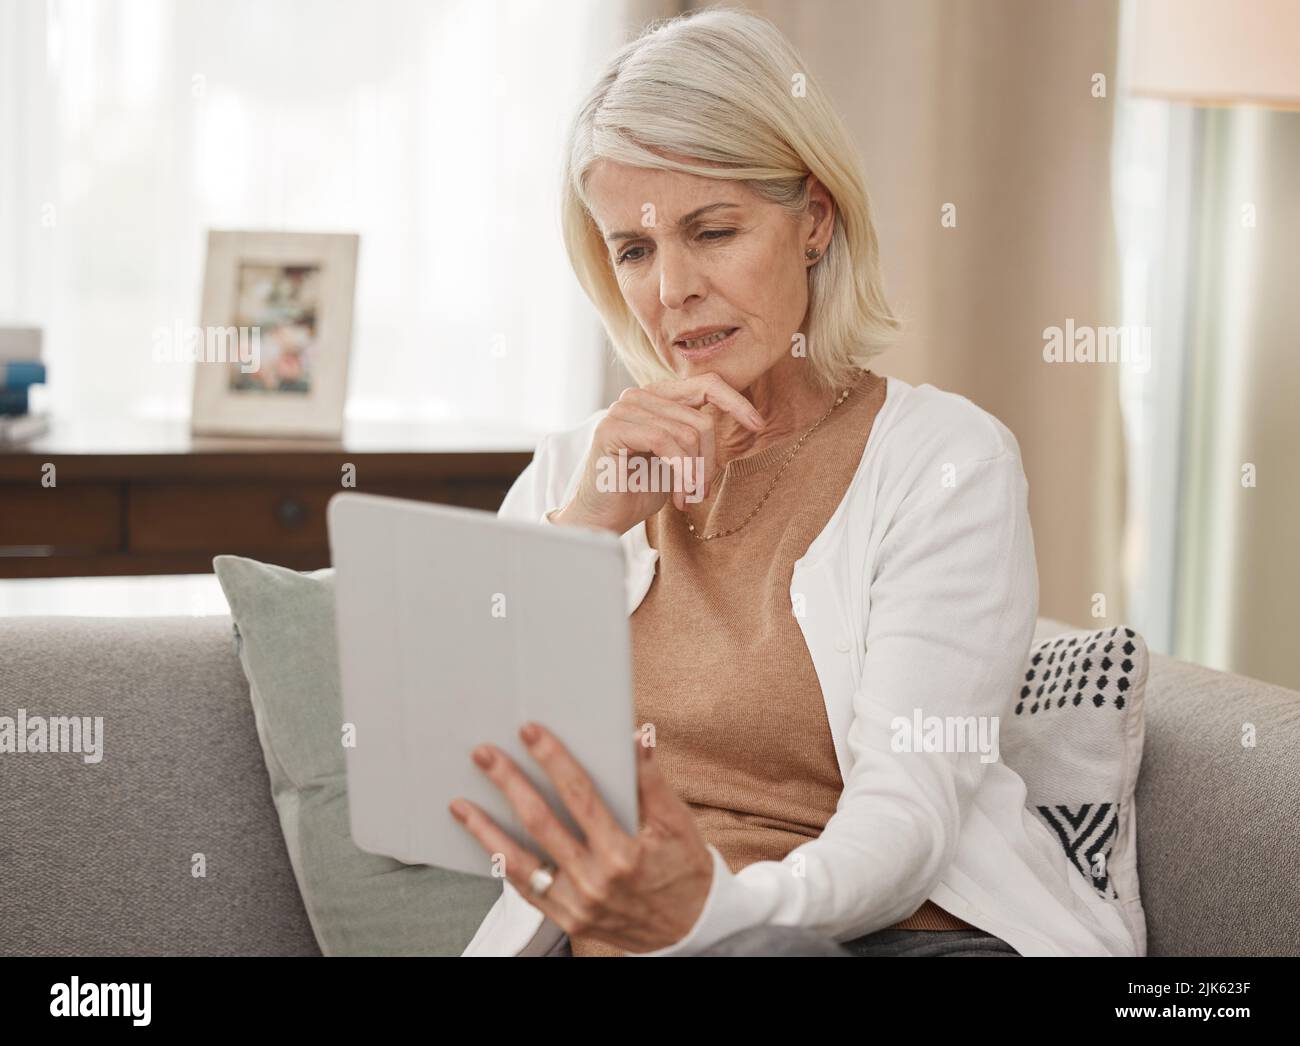 Si vous ne savez pas obtenir informé. Une femme mature utilisant une tablette numérique et regardant la maison préoccupée. Banque D'Images